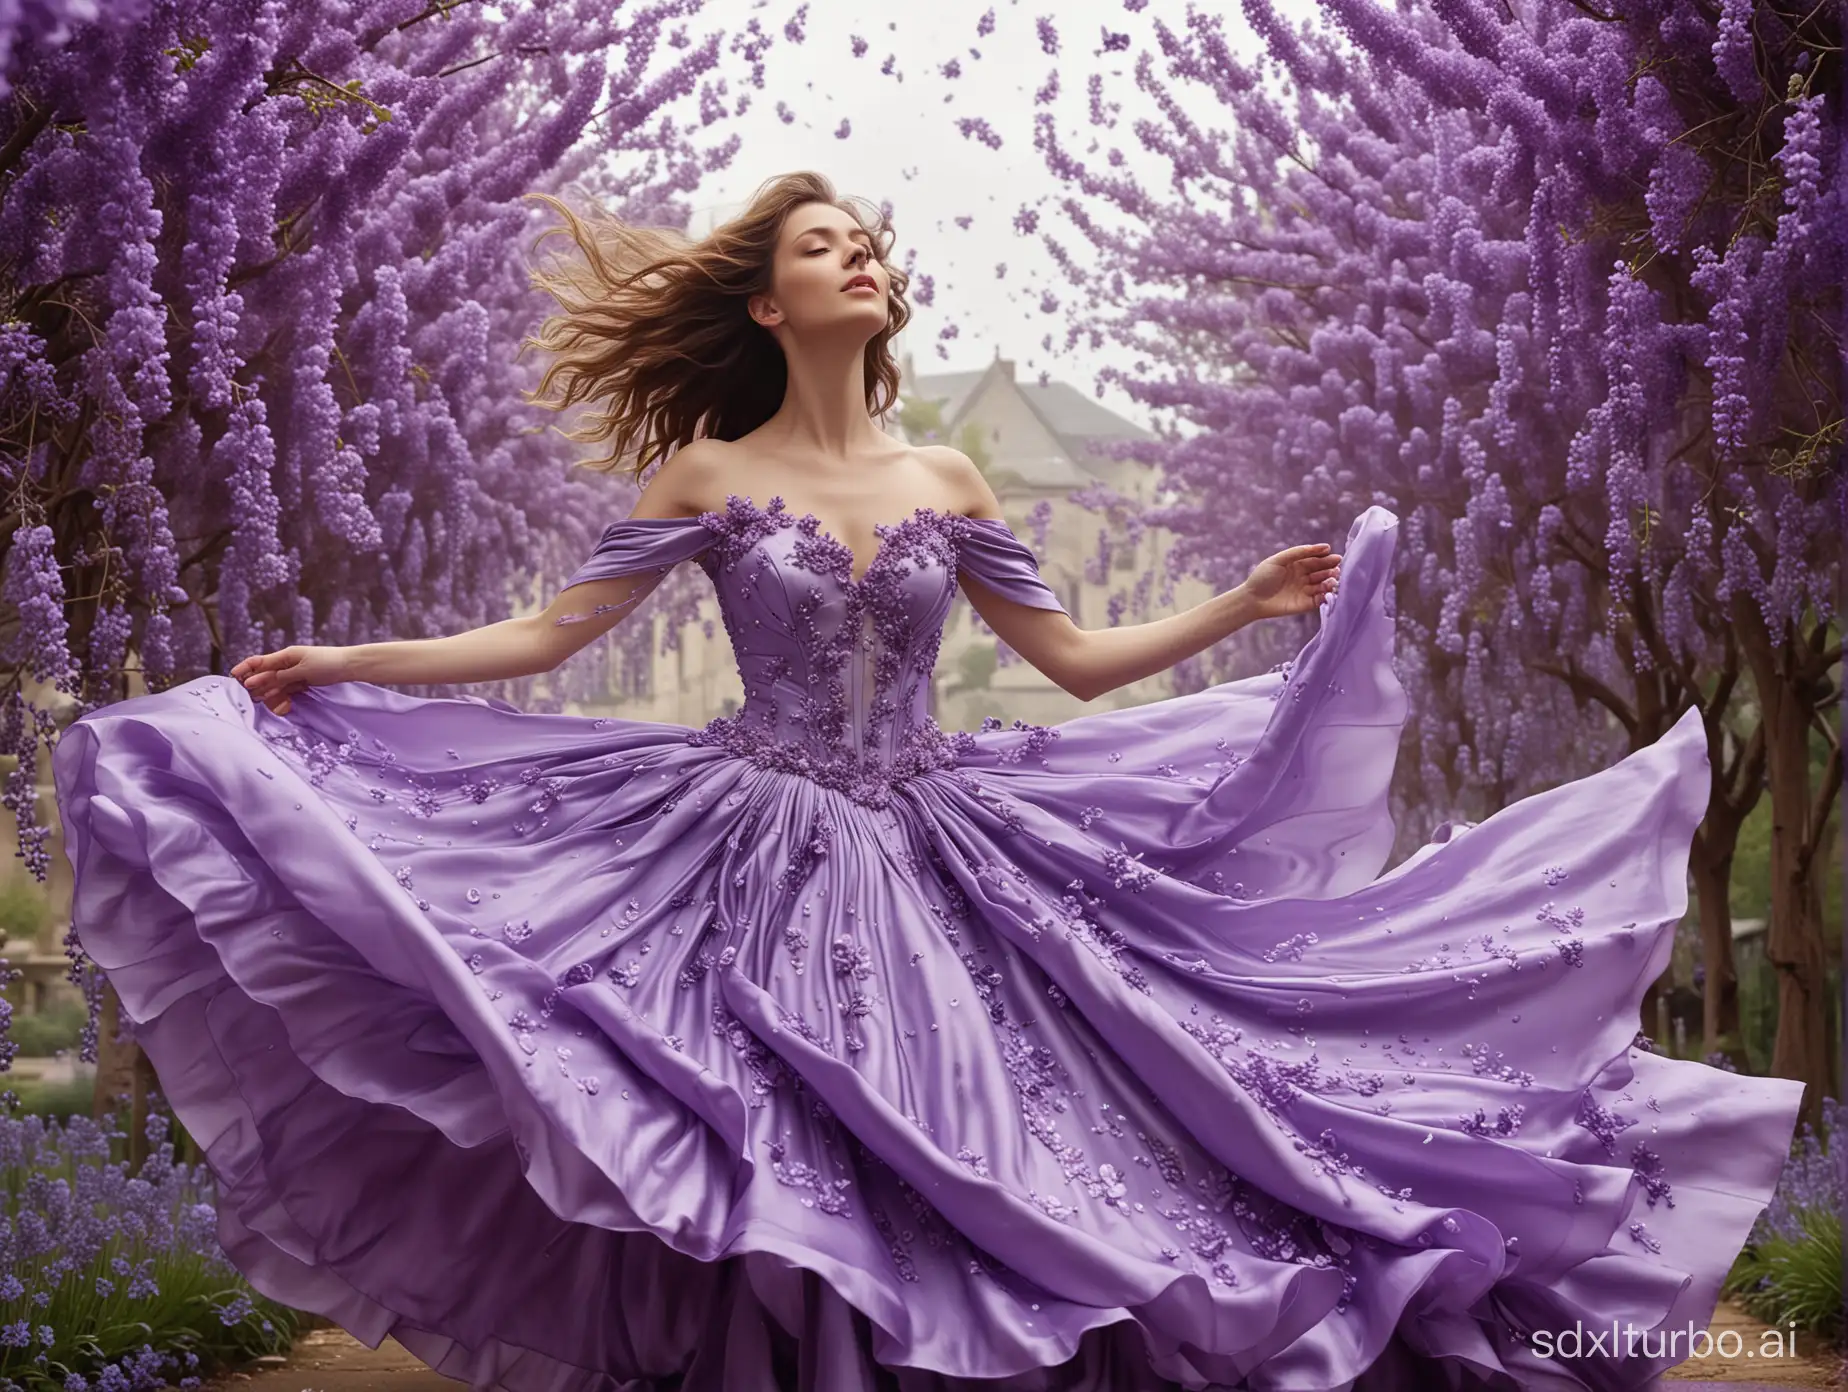 Floating-Petal-Gown-Lavender-Wisteria-Violet-Floral-Fantasy